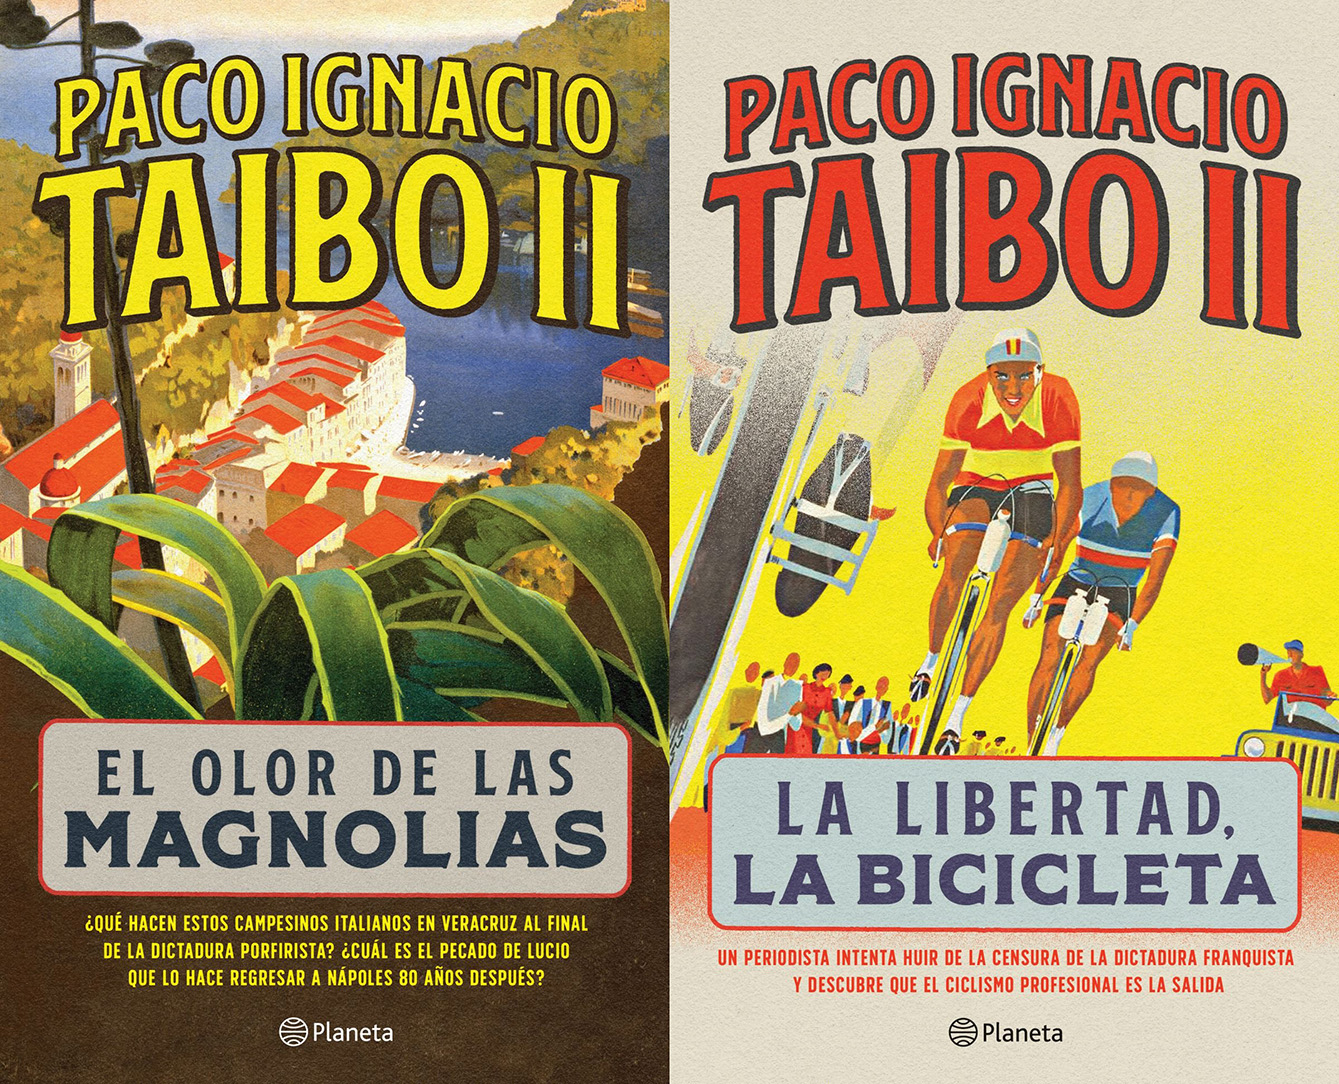 $!Llegó la hora de la dignidad: Paco Ignacio Taibo II